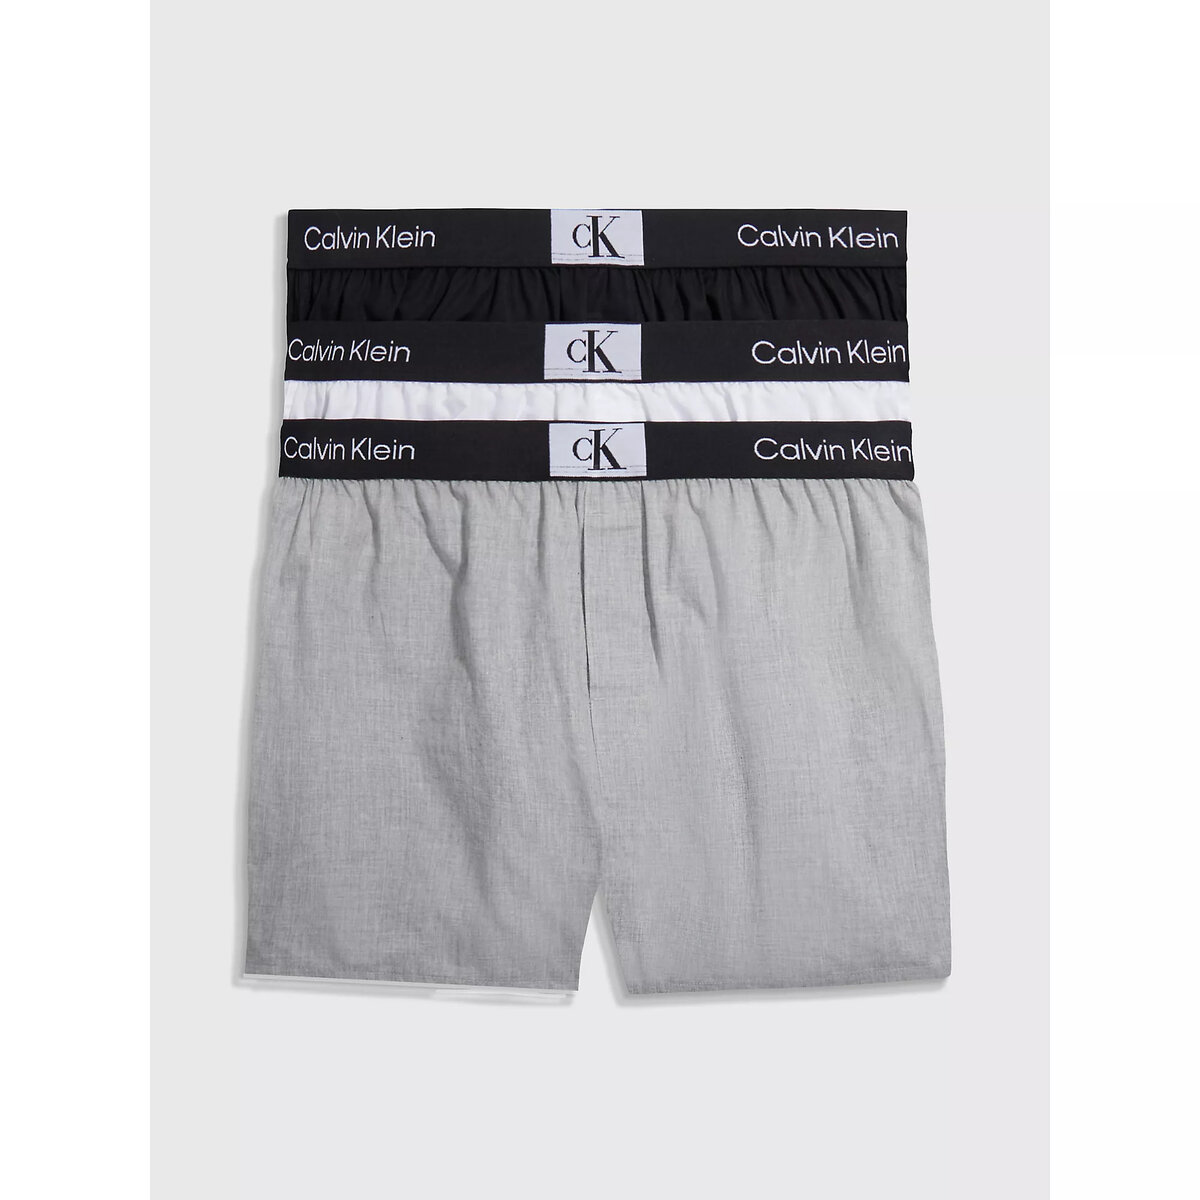 Pánské spodní prádlo BOXER SLIM Calvin Klein (3 ks) i652_000NB3412A6H3001